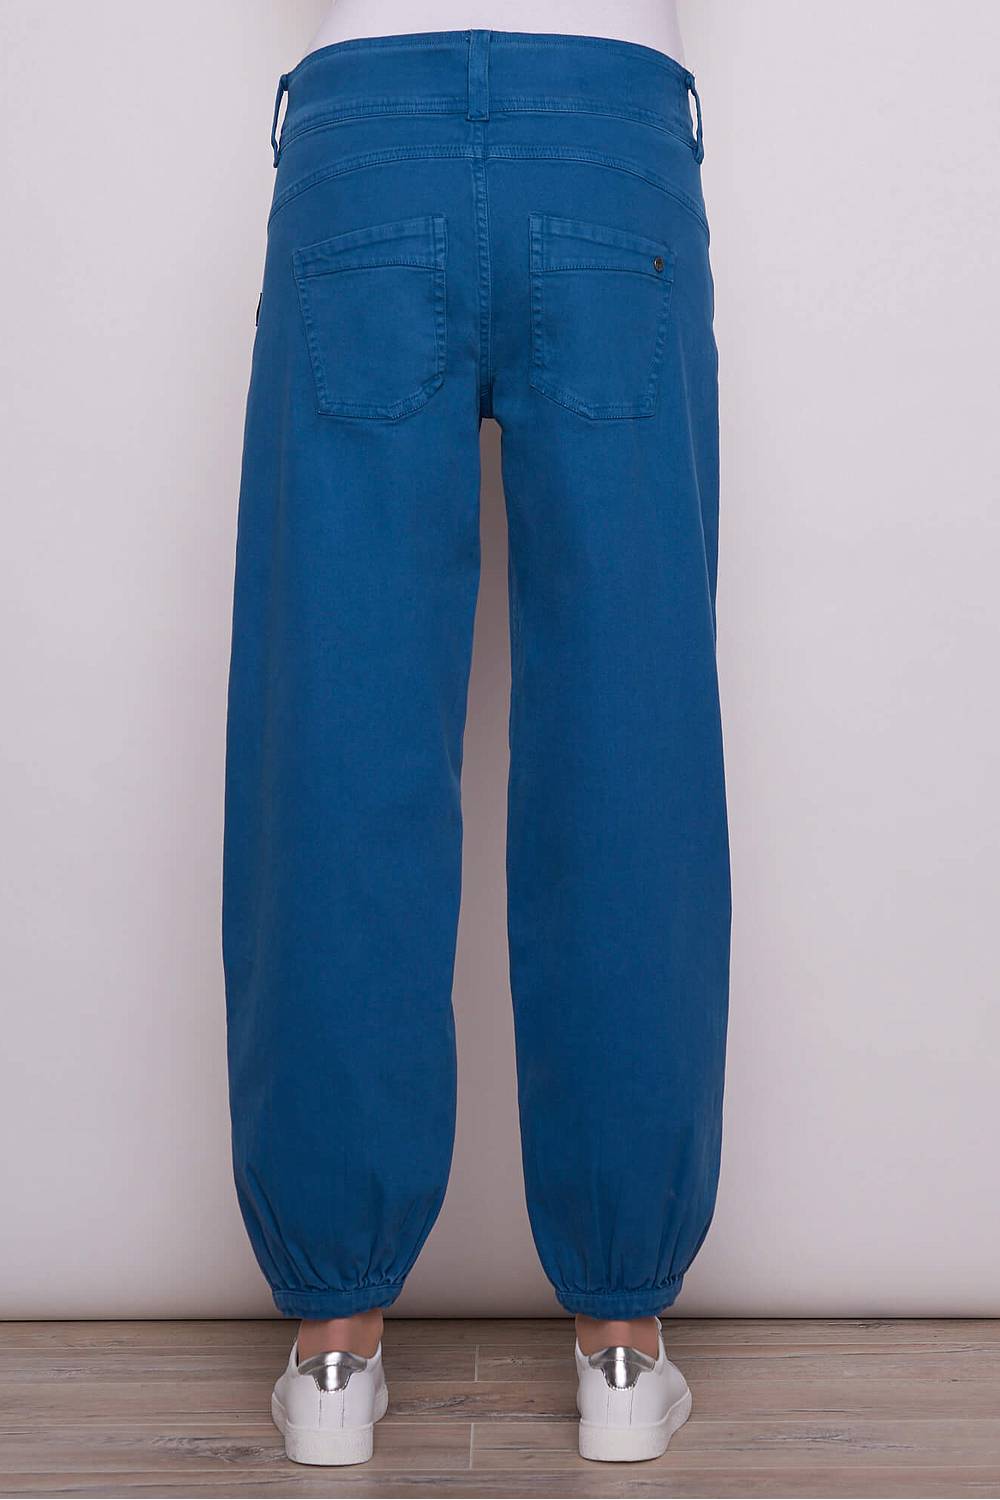 Blauwe jeans pofbroek